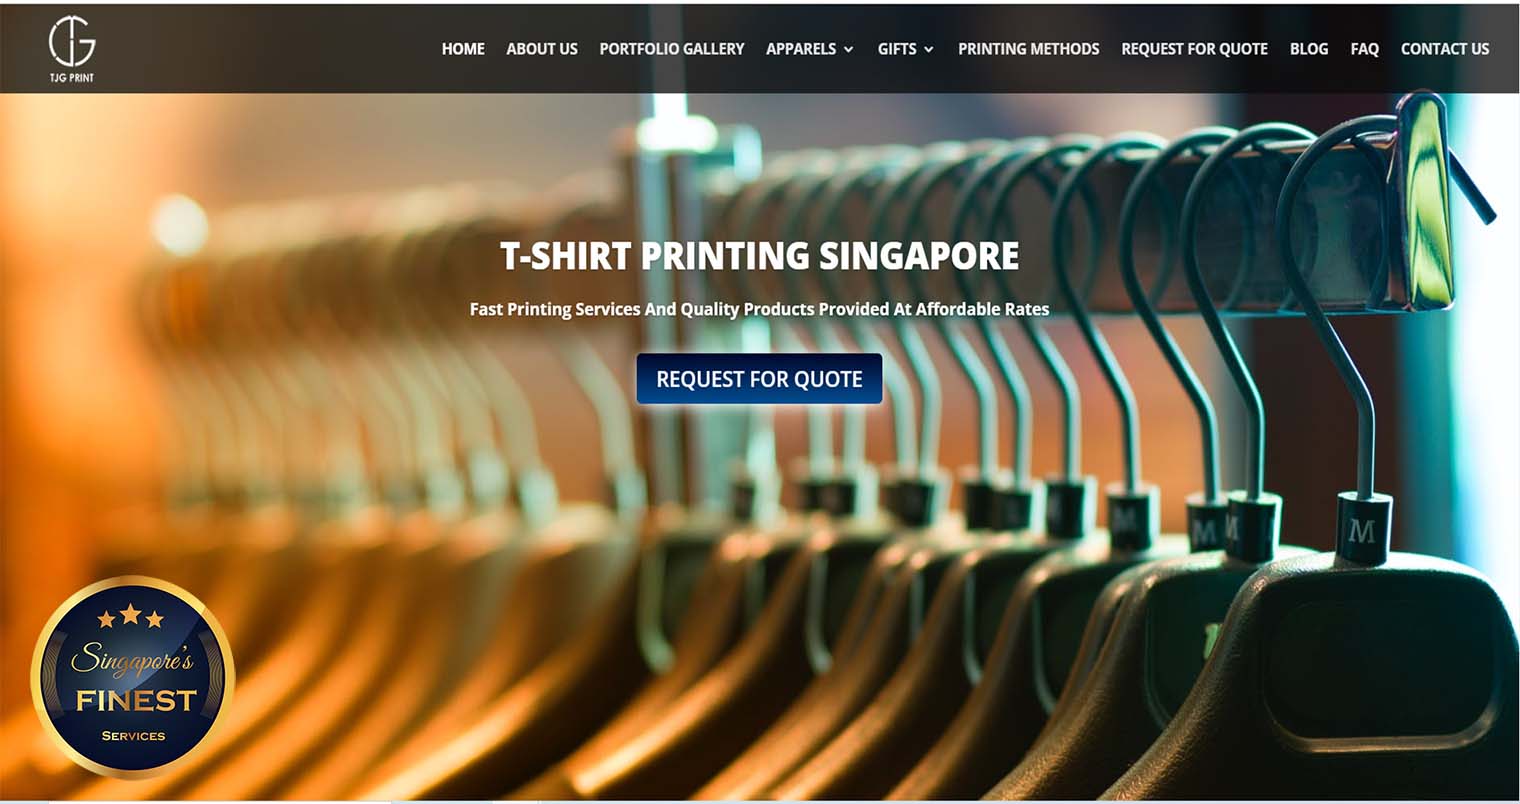 TJG Print - Tshirt Printing Singapore